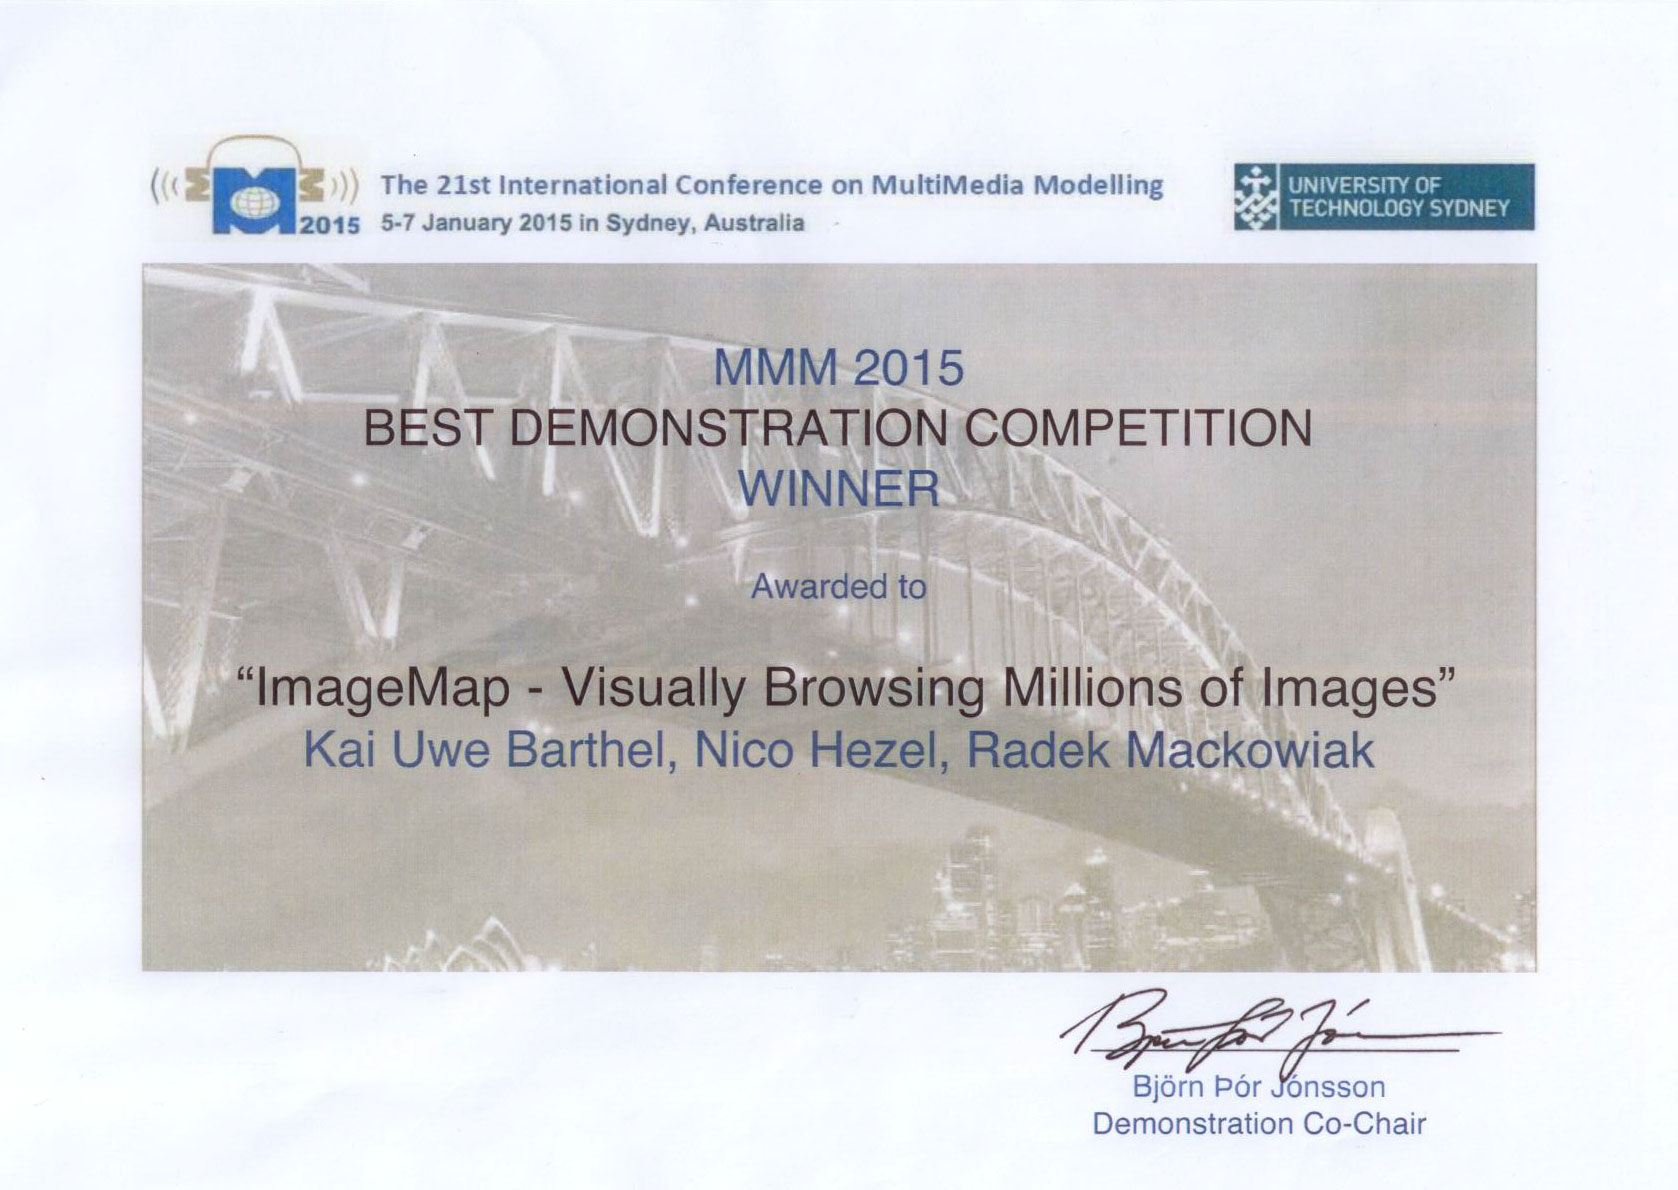 Award for best demonstration 'ImageMap'